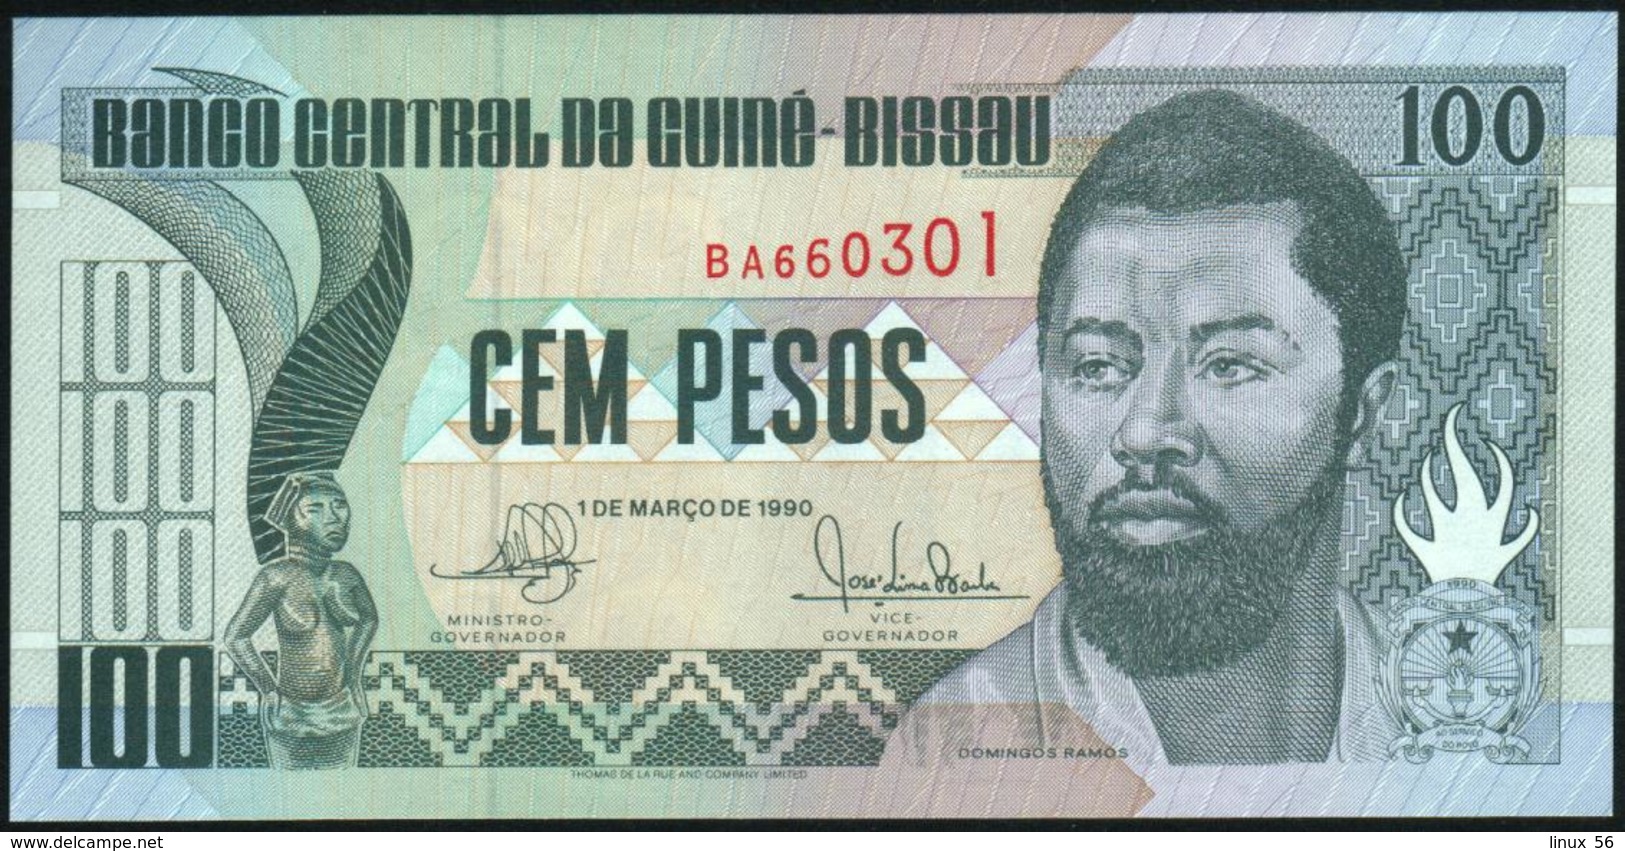 GUINEA BISSAU - 100 Pesos 01.03.1990 {Banco Central Da Guiné-Bissau} UNC P.11 - Guinee-Bissau